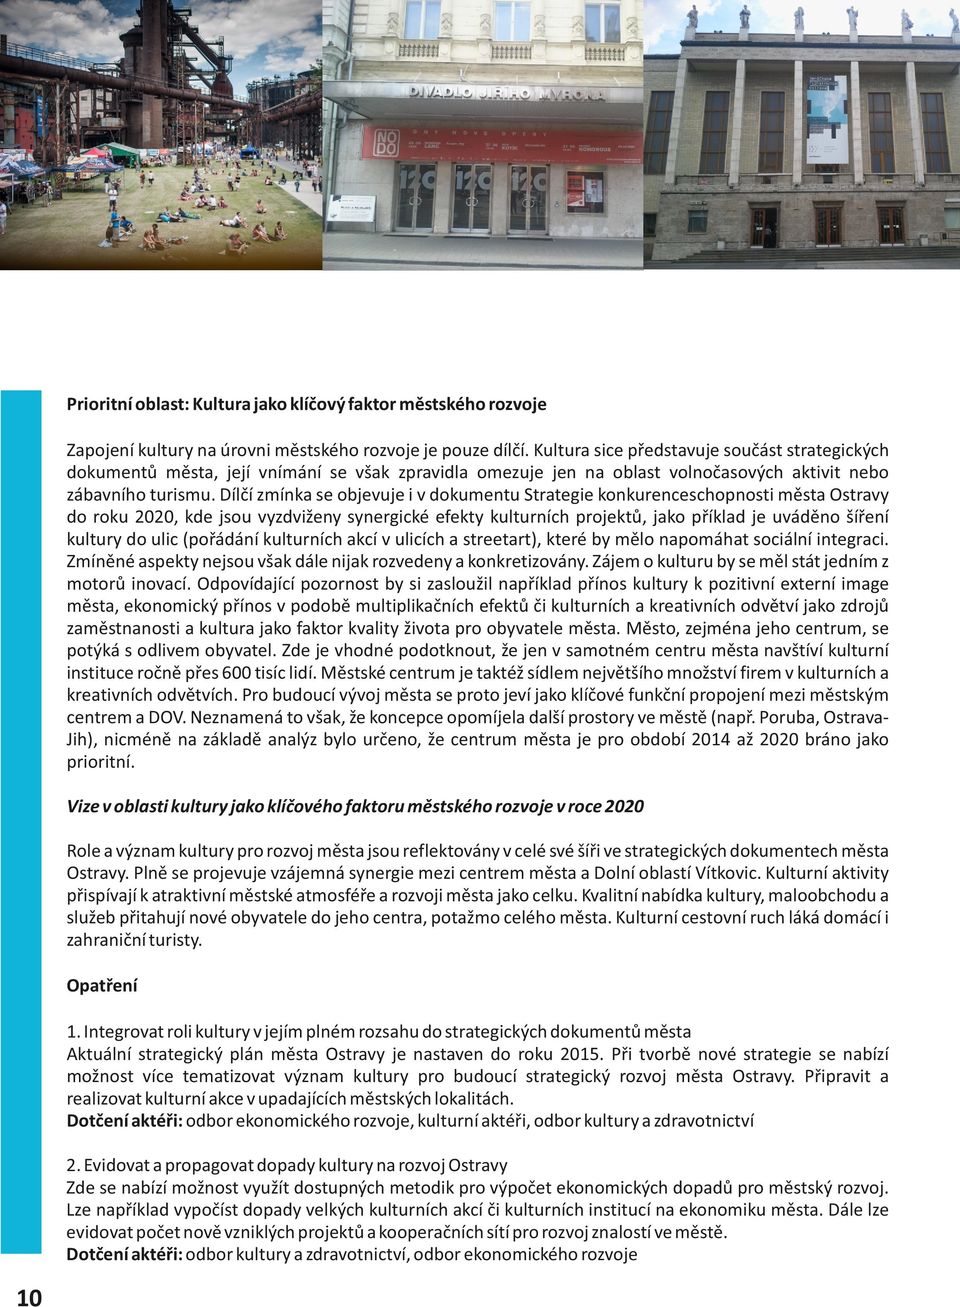 Dílčí zmínka se objevuje i v dokumentu Strategie konkurenceschopnosti města Ostravy do roku 2020, kde jsou vyzdviženy synergické efekty kulturních projektů, jako příklad je uváděno šíření kultury do